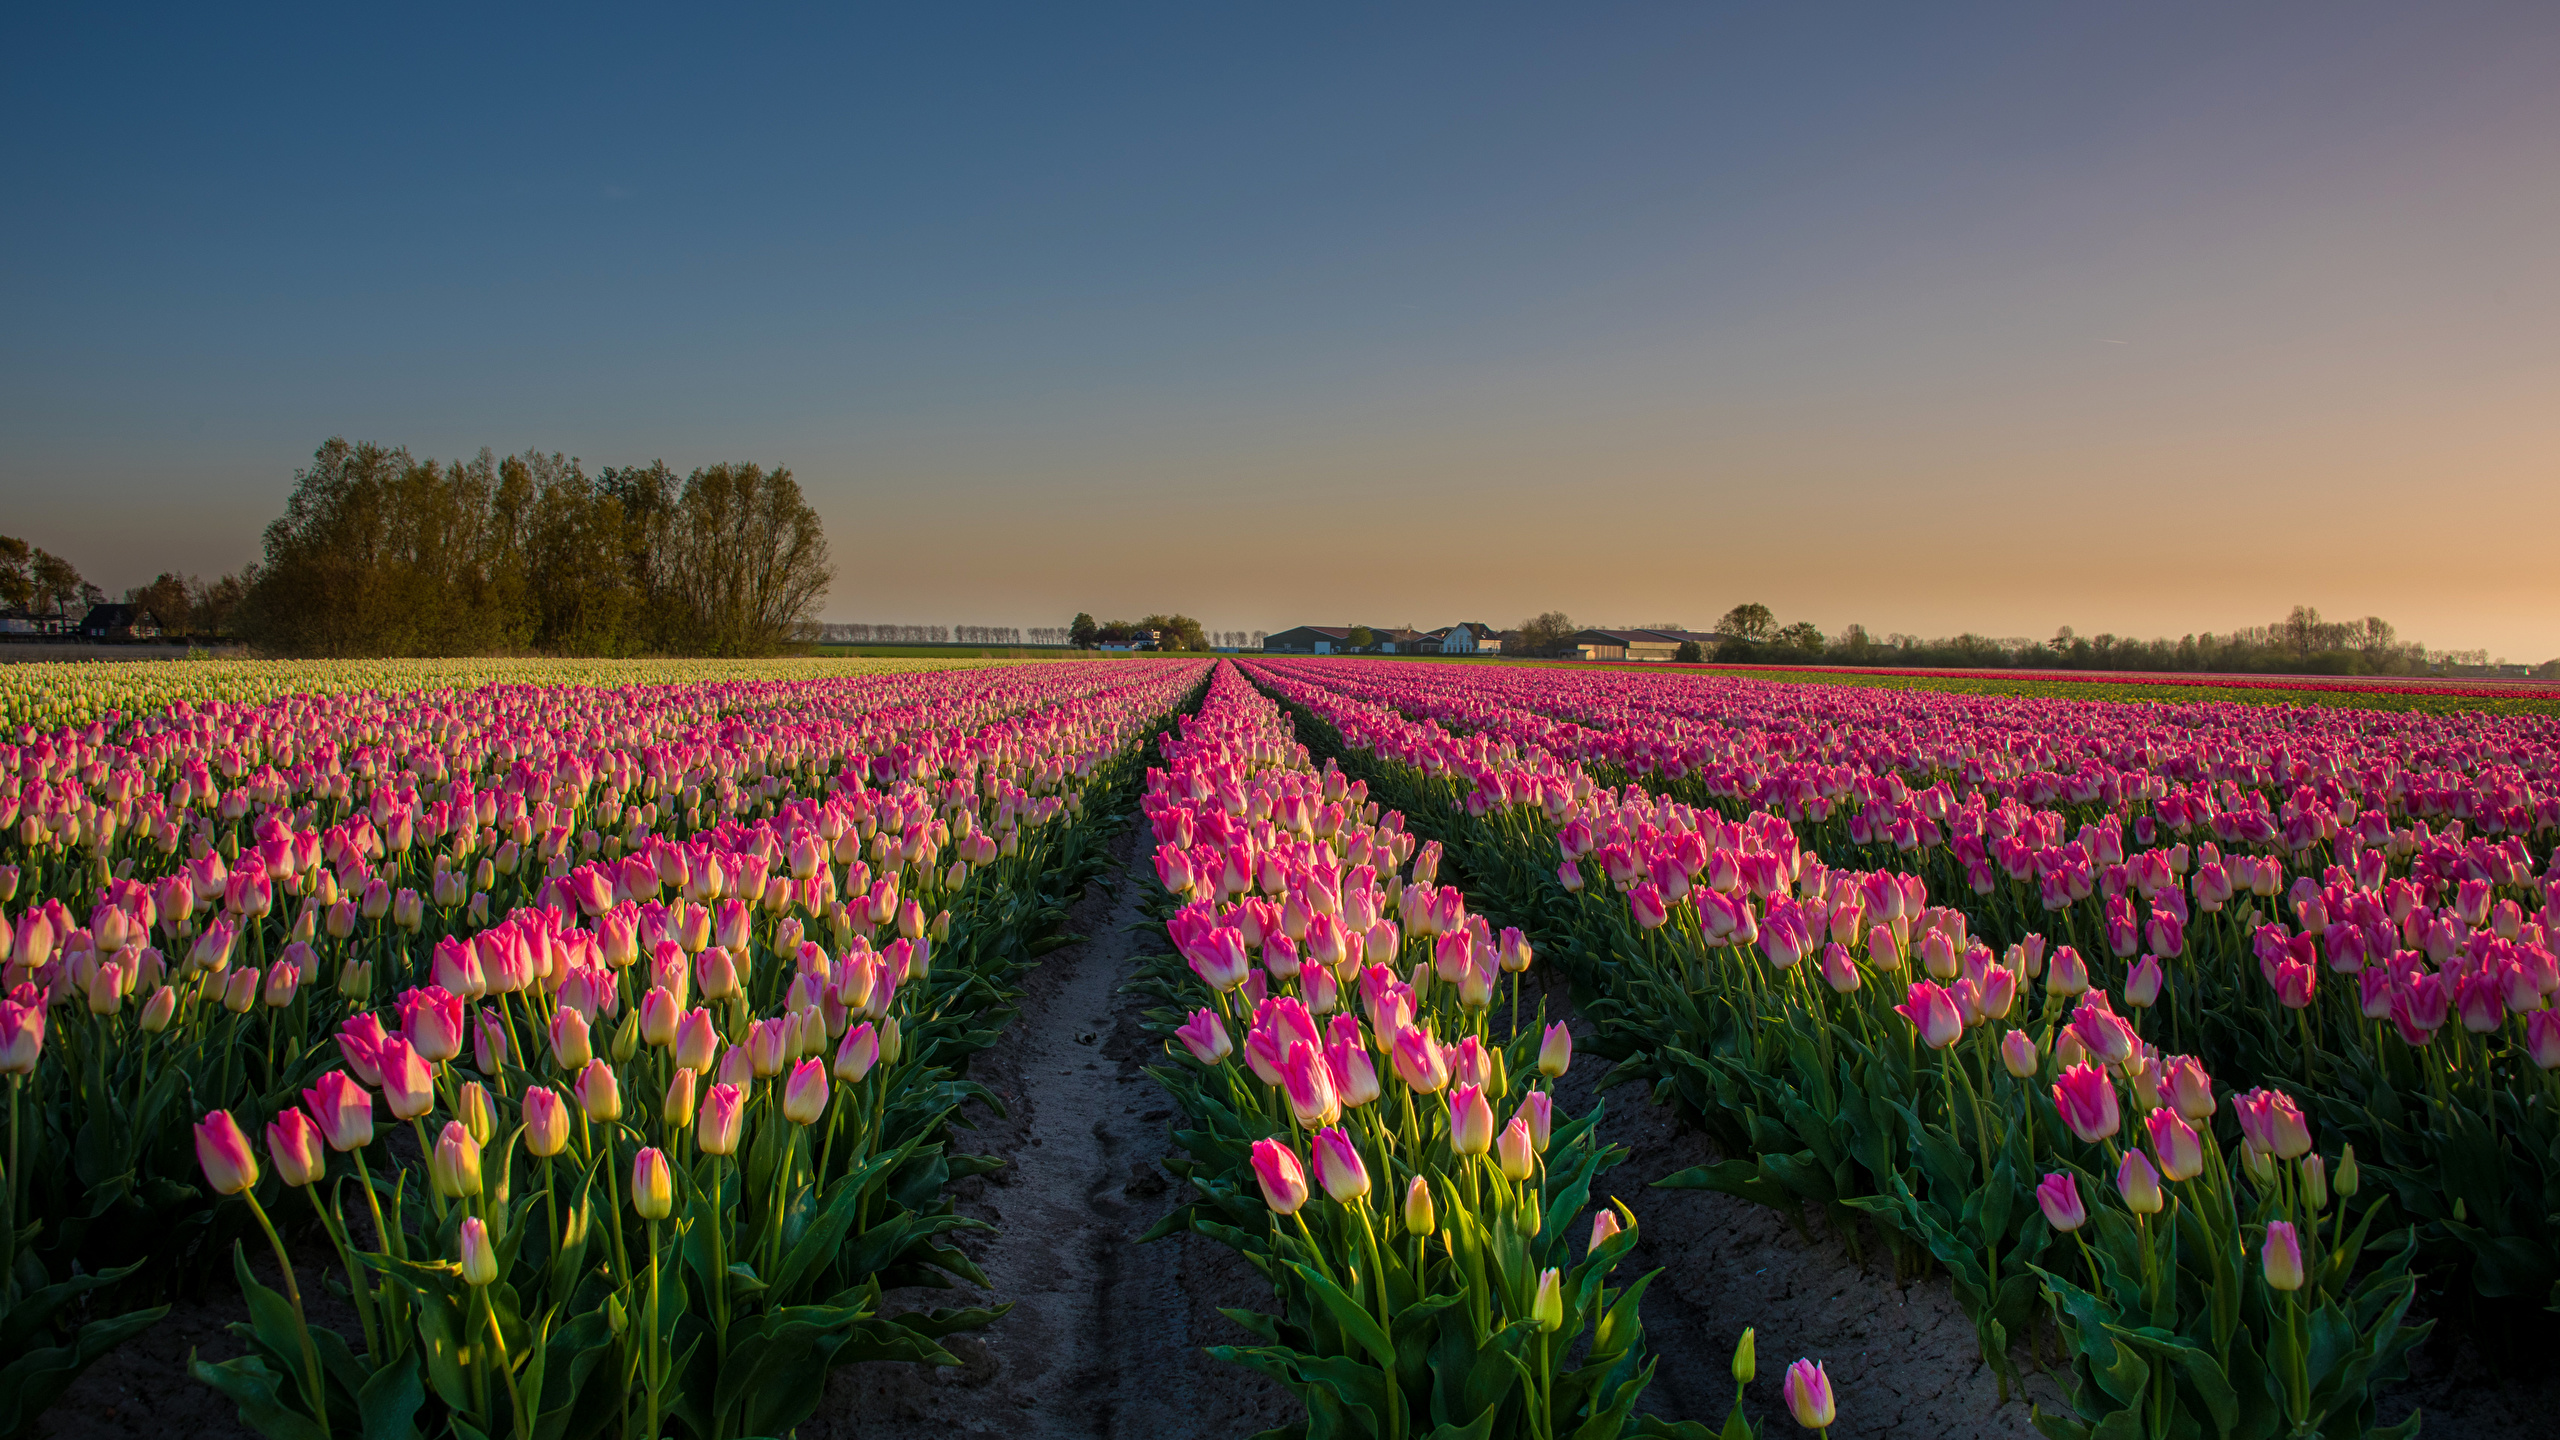 壁紙 2560x1440 オランダ 風景写真 畑 チューリップ たくさん 朝焼けと日没 ピンク 花 ダウンロード 写真